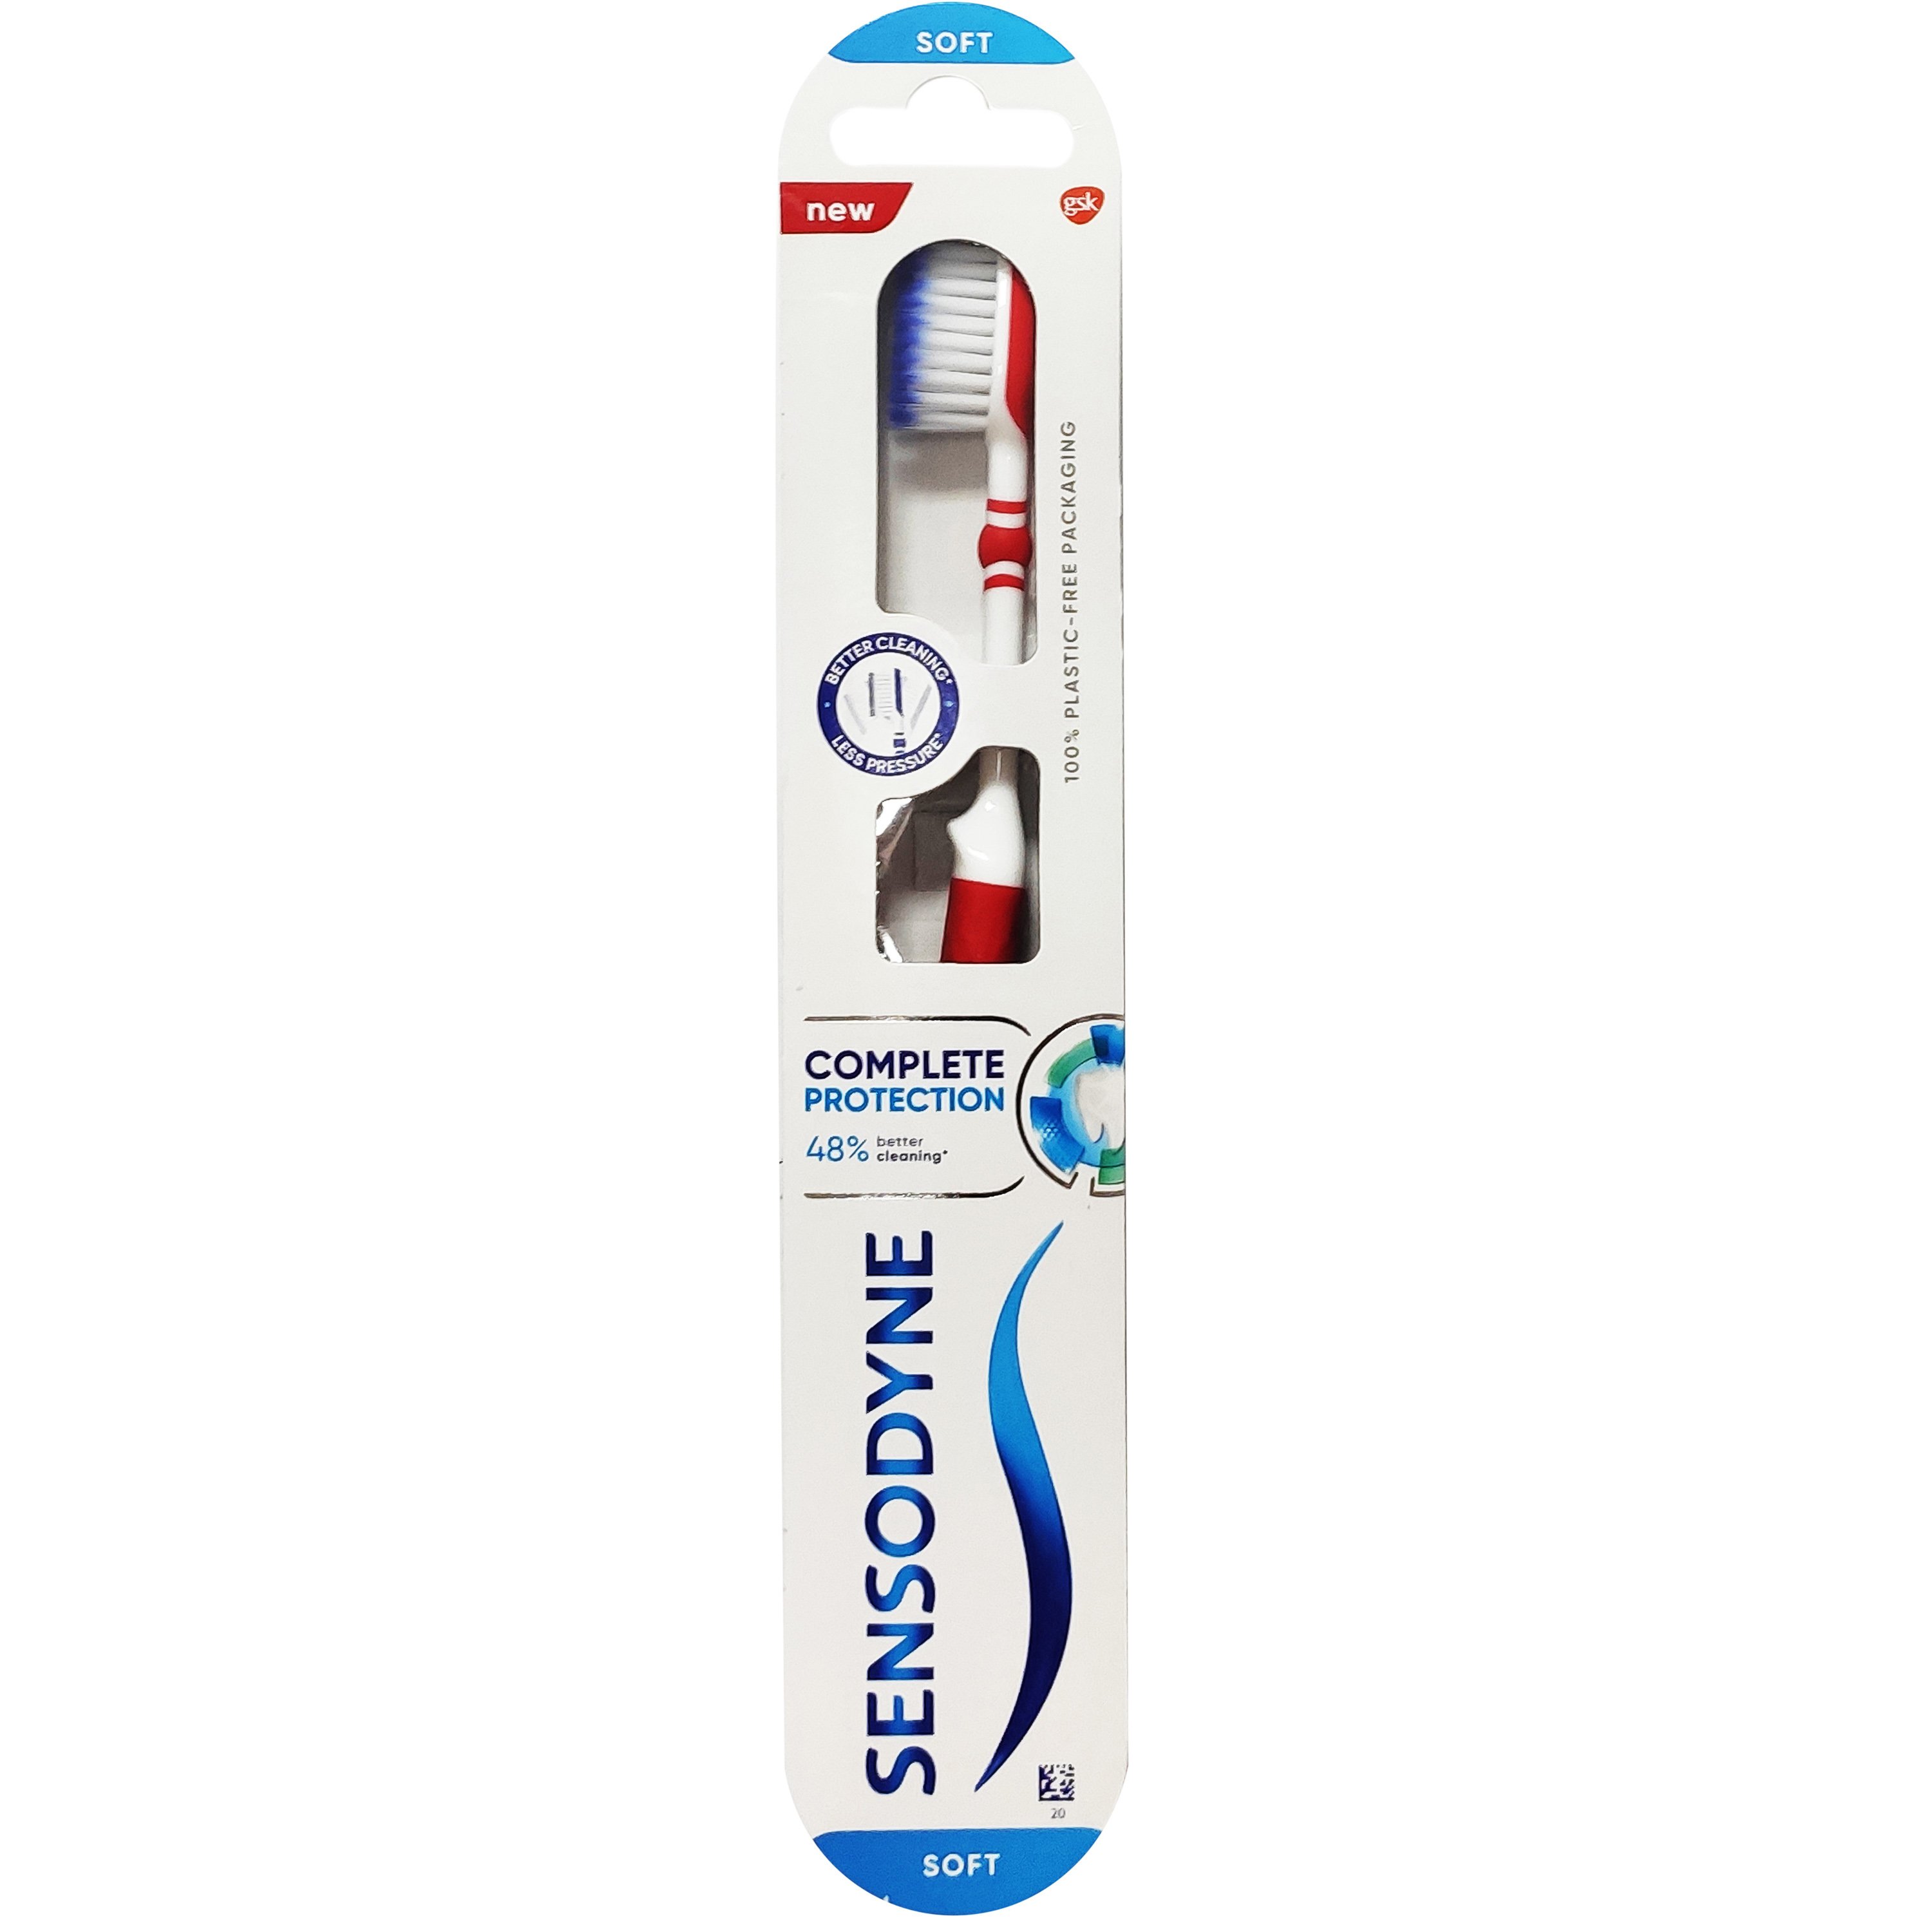 Sensodyne Toothbrush Complete Protection Soft Οδοντόβουρτσα για Άτομα με Ευαίσθητα Δόντια για Καλύτερο Καθαρισμό 1 Τεμάχιο – κόκκινο